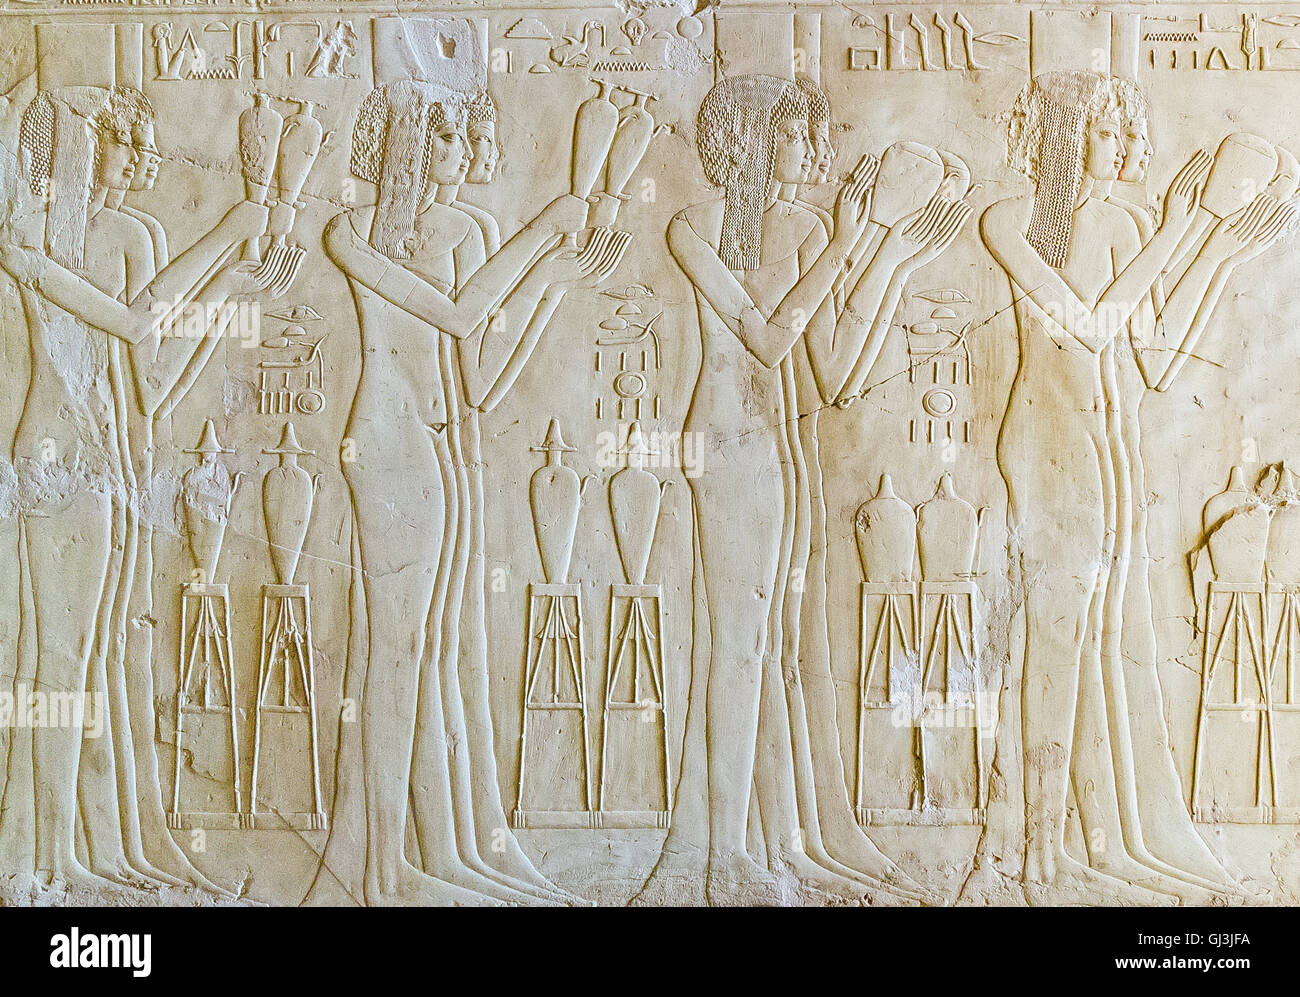 Egitto Luxor, tomba di Kheruef, 8 giovani donne, forse principesse, figlie di sovrani stranieri, sollevata al Faraone la corte. Foto Stock